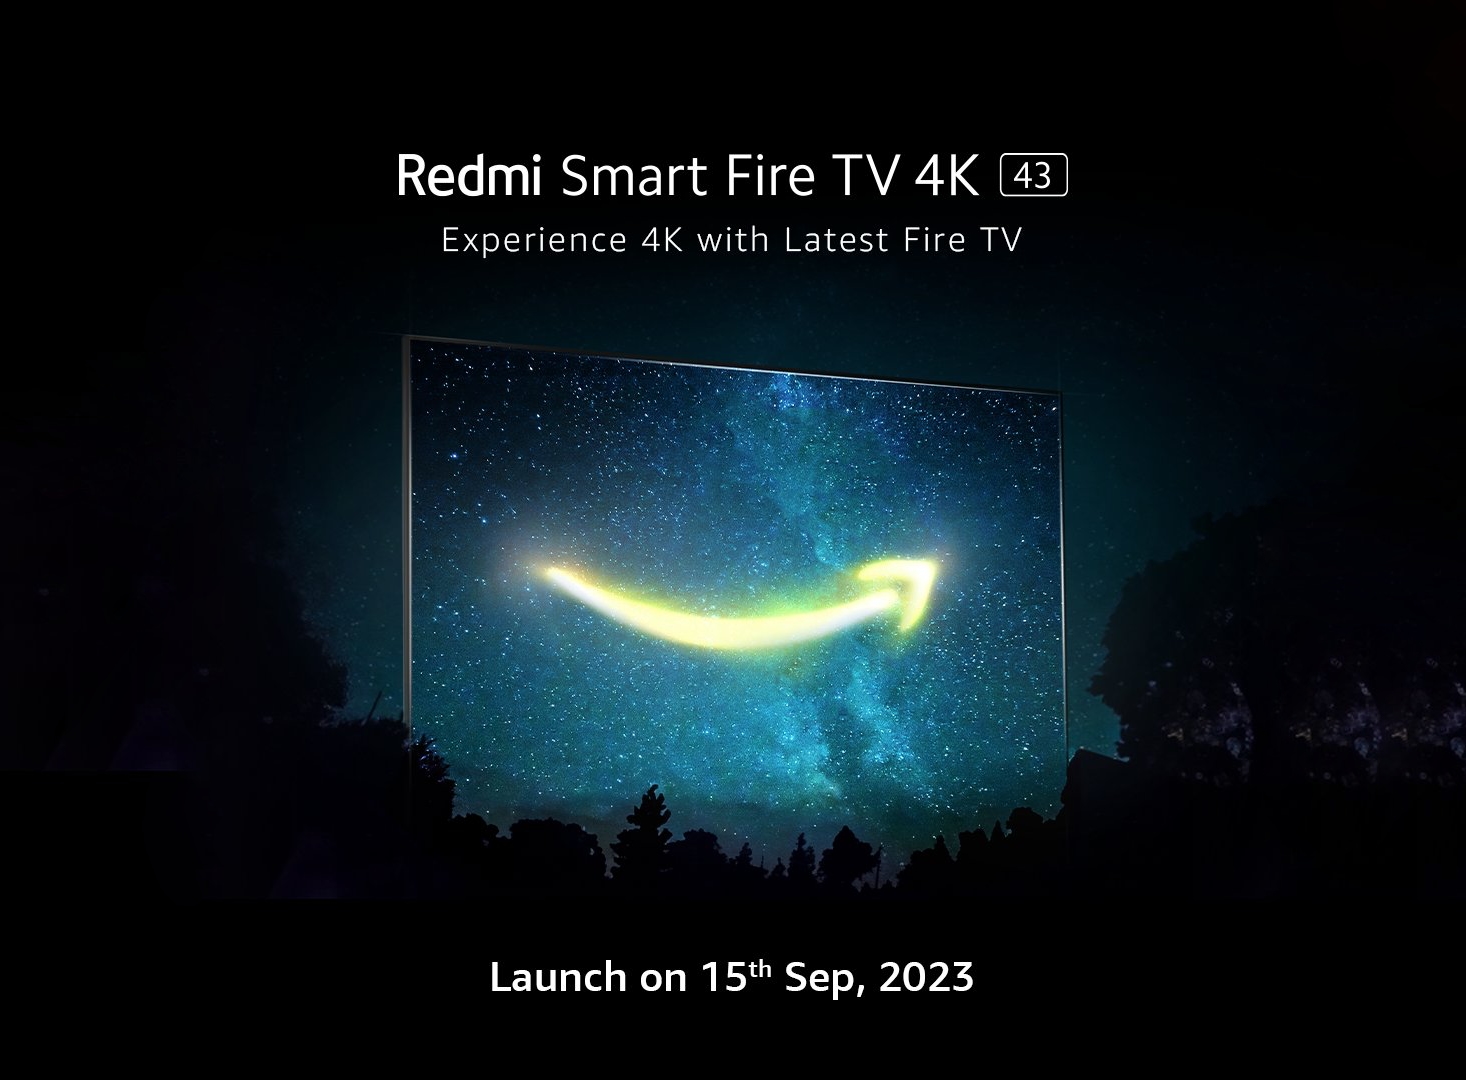 Xiaomi vil avduke Redmi Smart Fire TV med en 43-tommers 4K-skjerm 15. september.